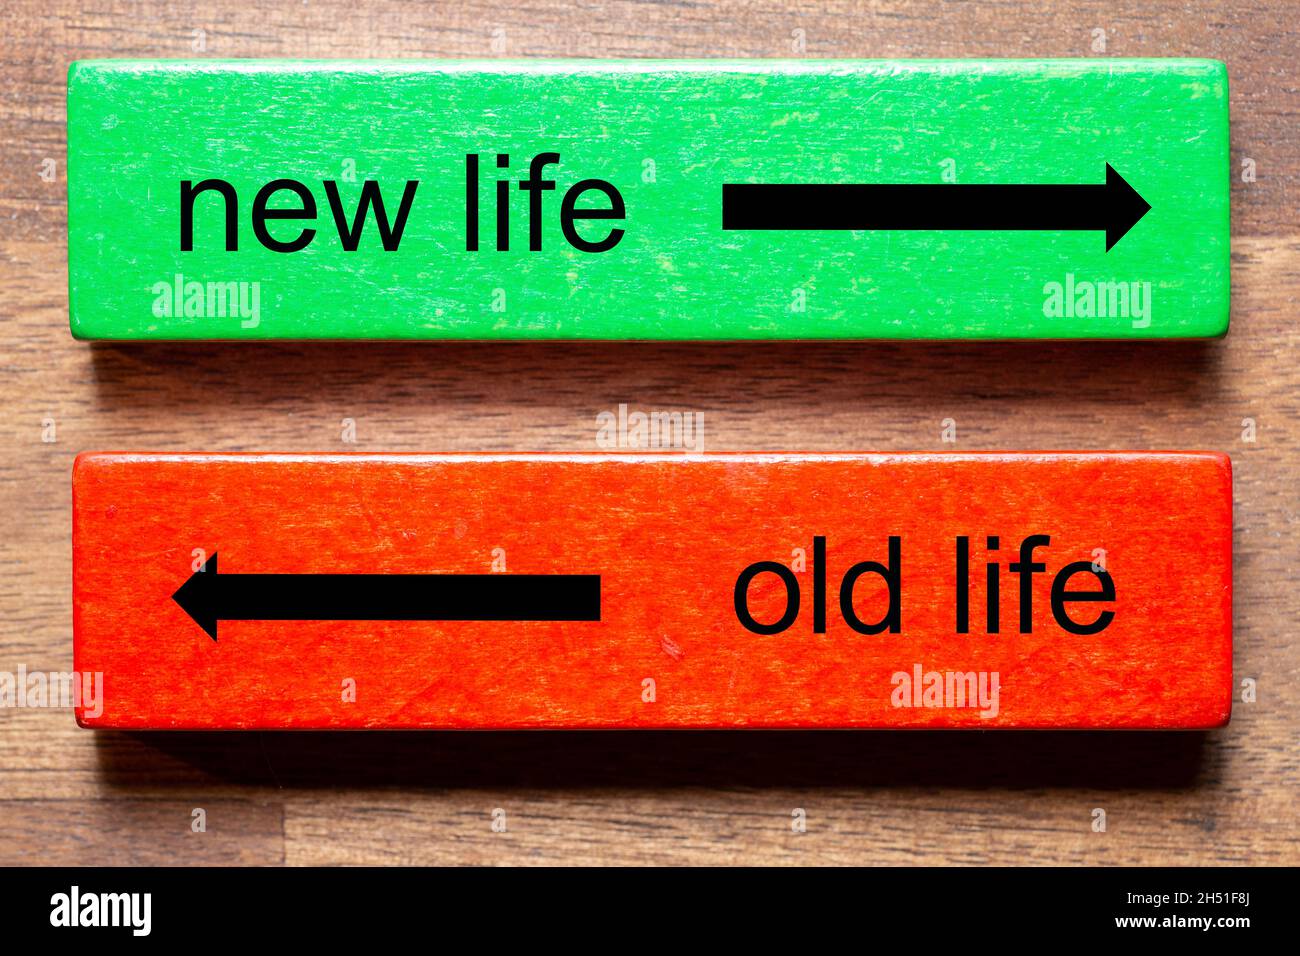 la nouvelle vie est écrite sur un bloc vert et la vie ancienne est le texte sur un bloc rouge.L'arrière-plan est un arrière-plan en bois sombre. Banque D'Images